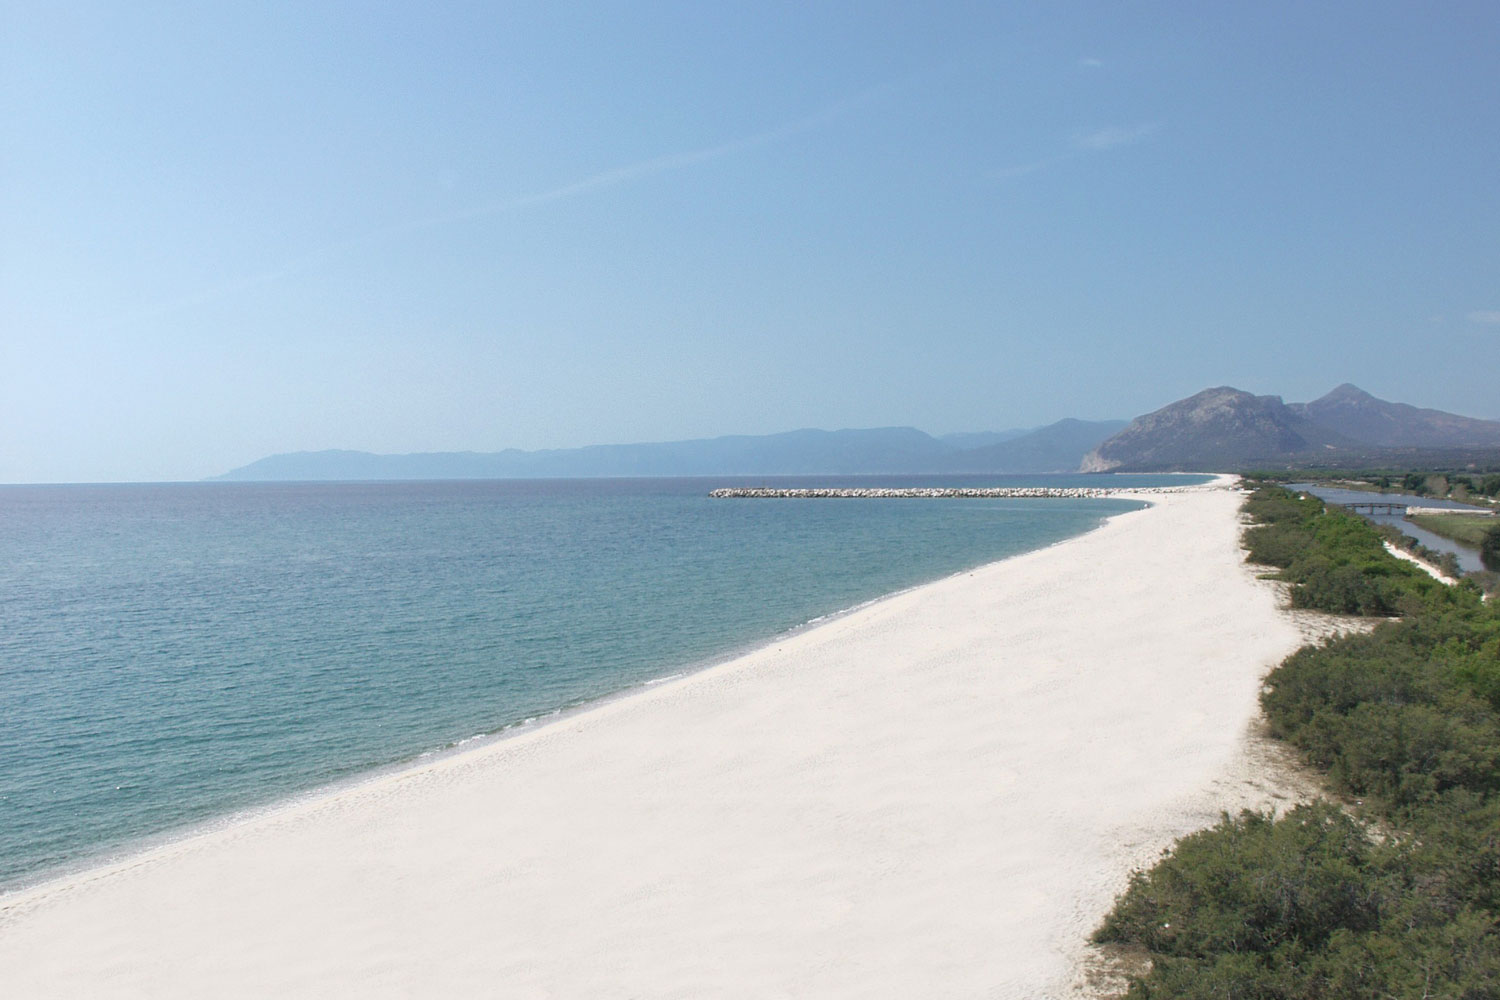 Vista della spiaggia di sabbia bianca dell'Hotel Club Marina Beach di Orosei.